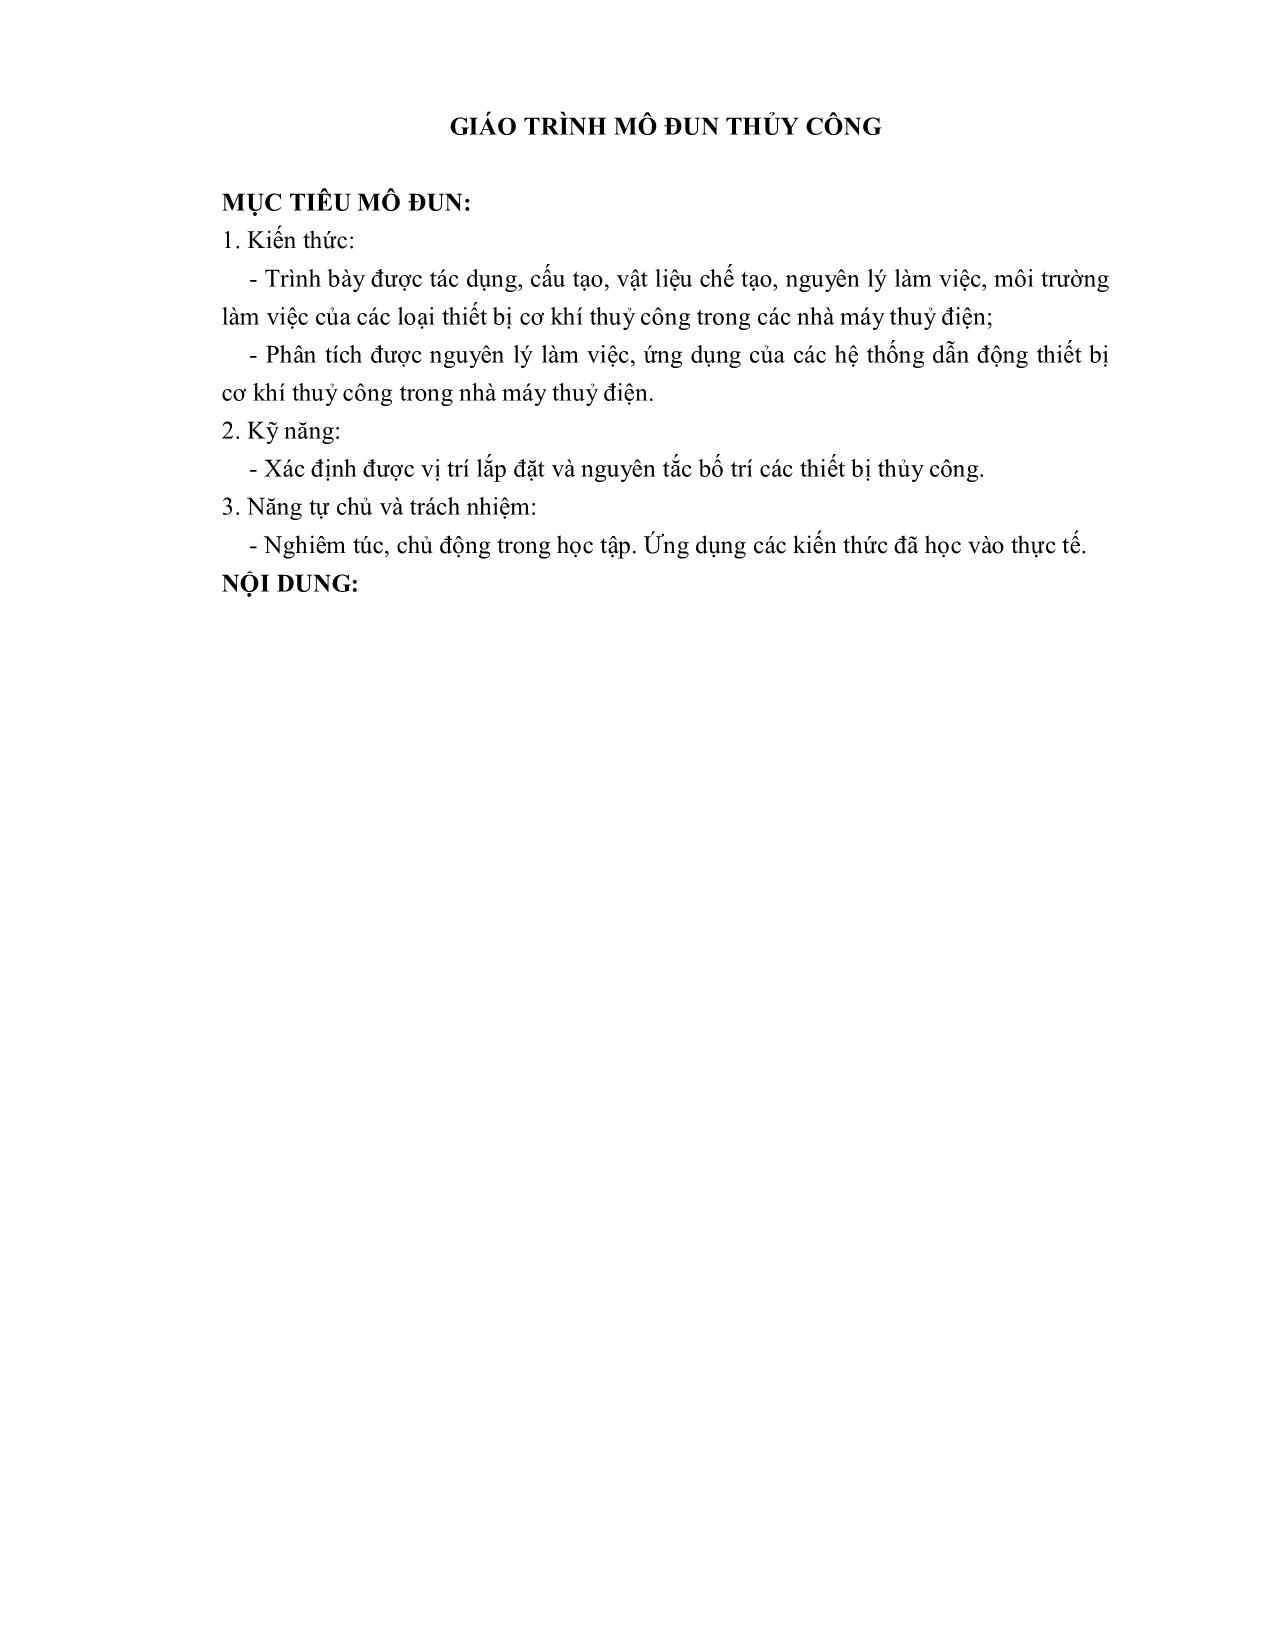 Giáo trình Thủy công - Nghề: Vận hành thủy điện trang 5